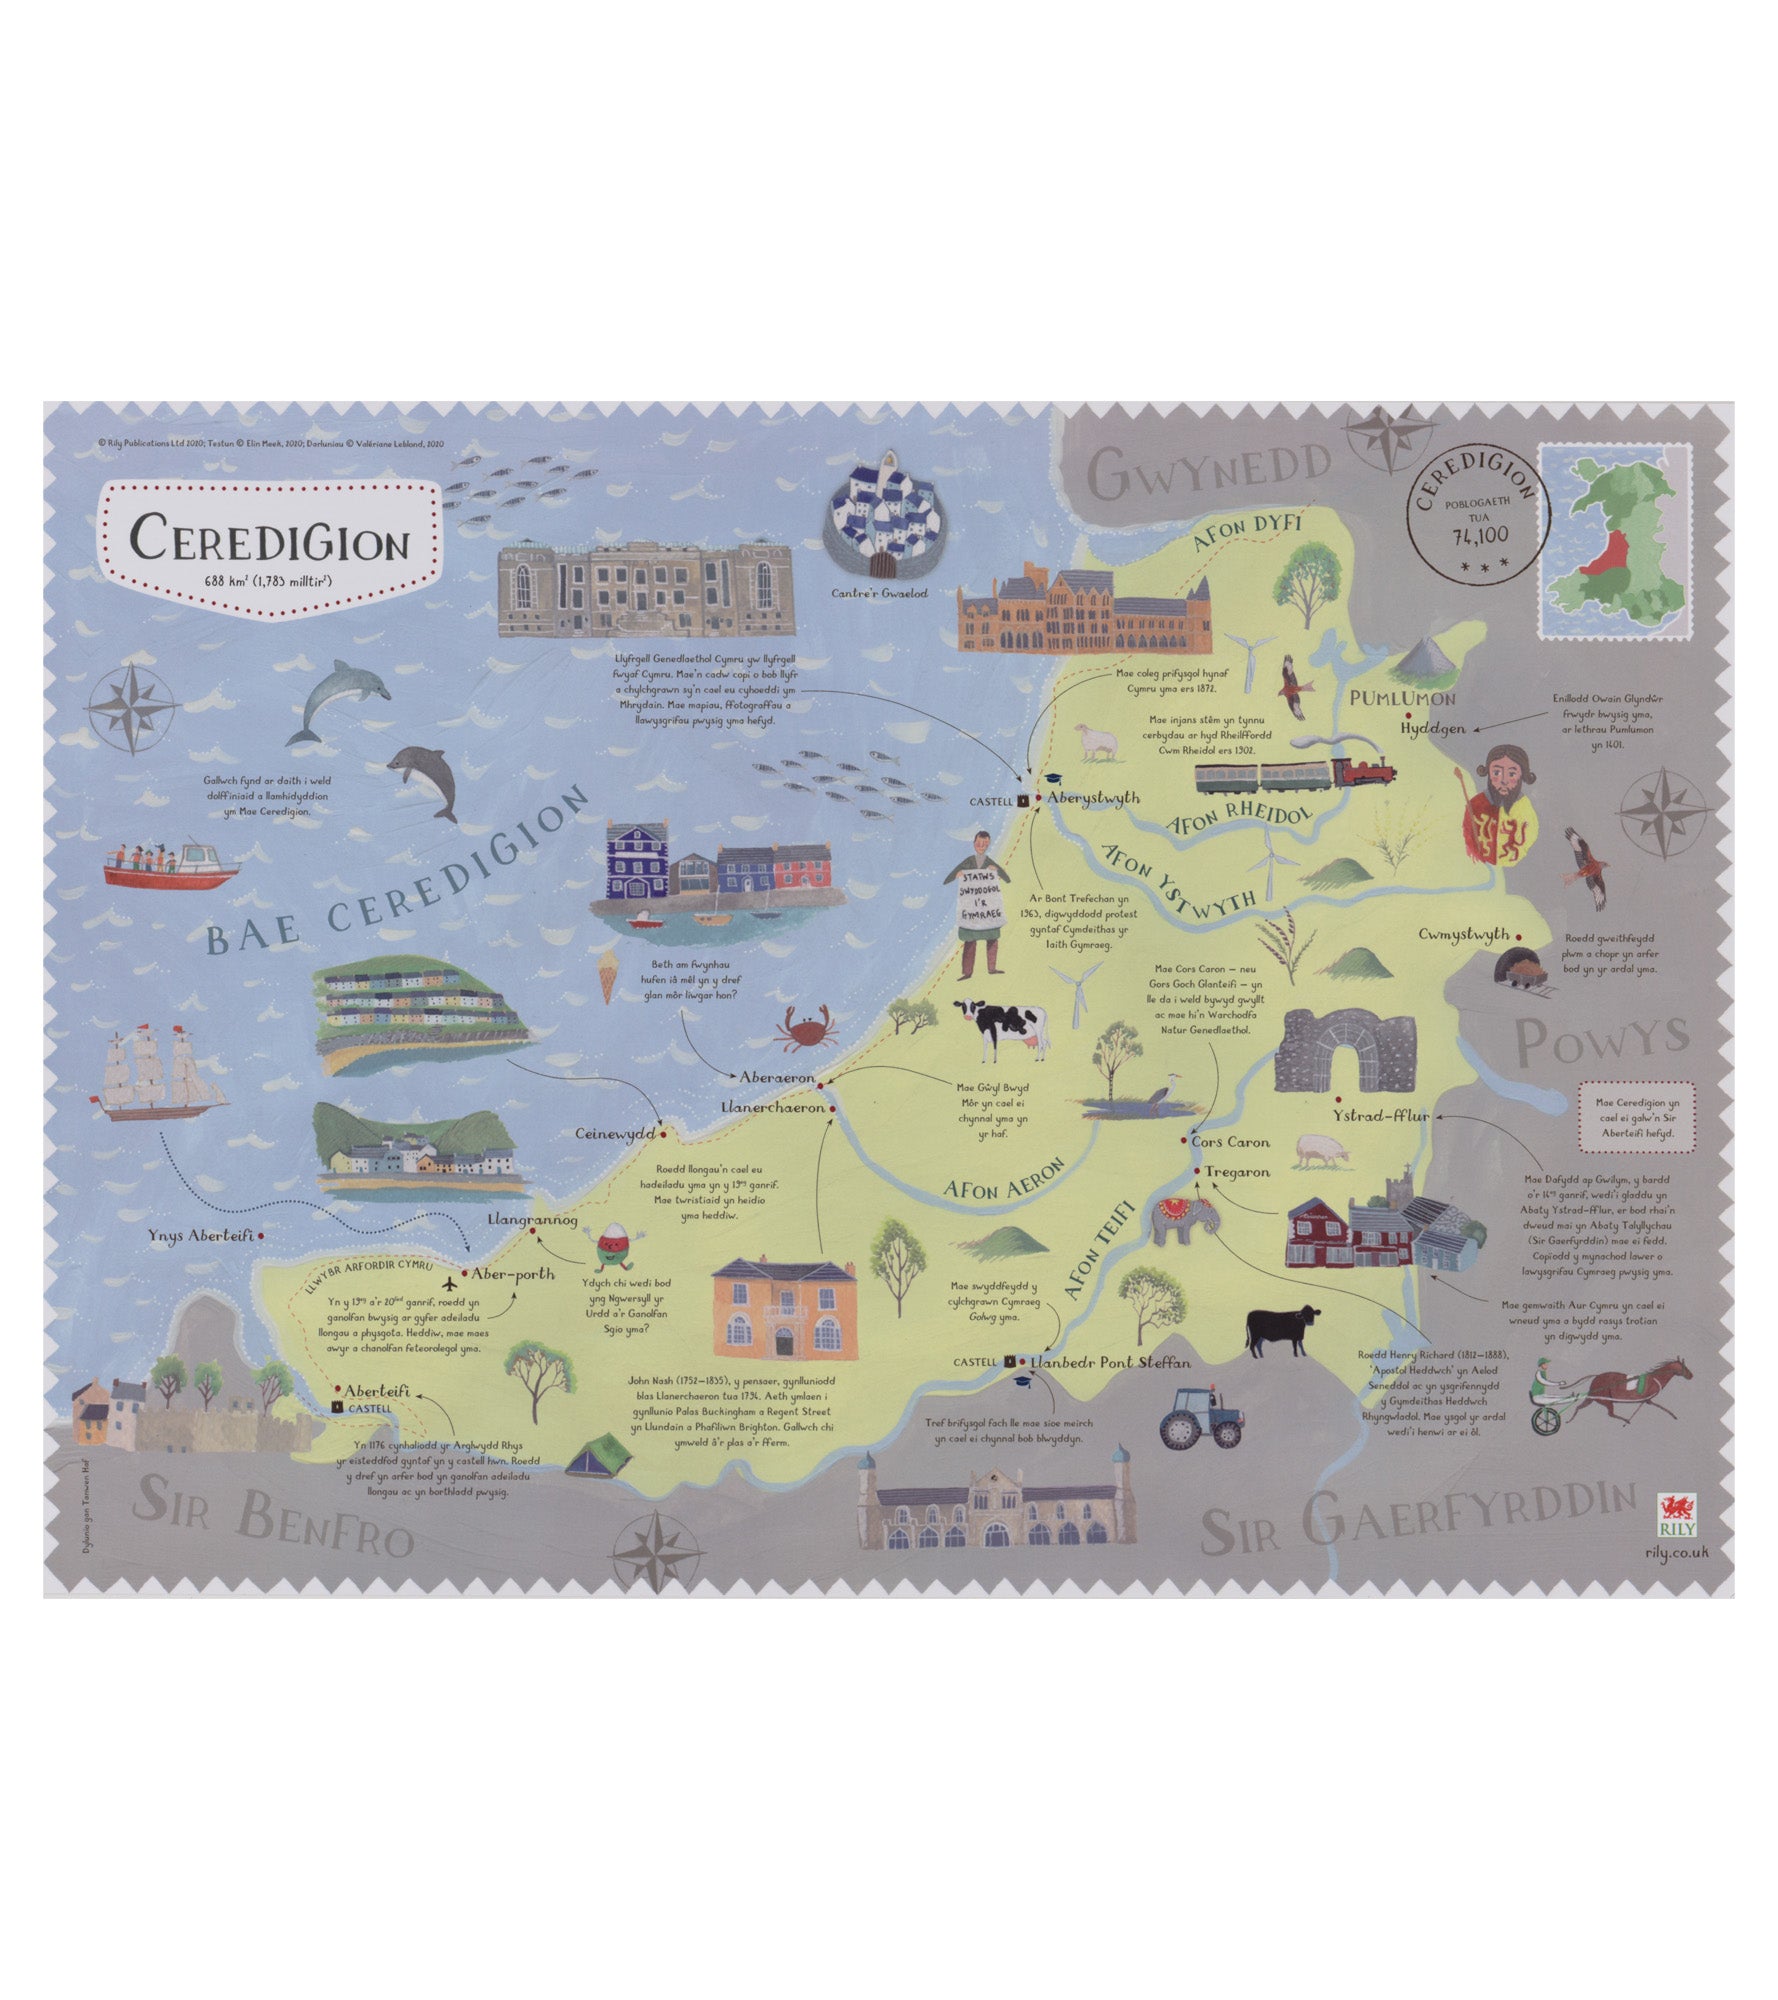 Ceredigion Map A3 Poster - Welsh Version